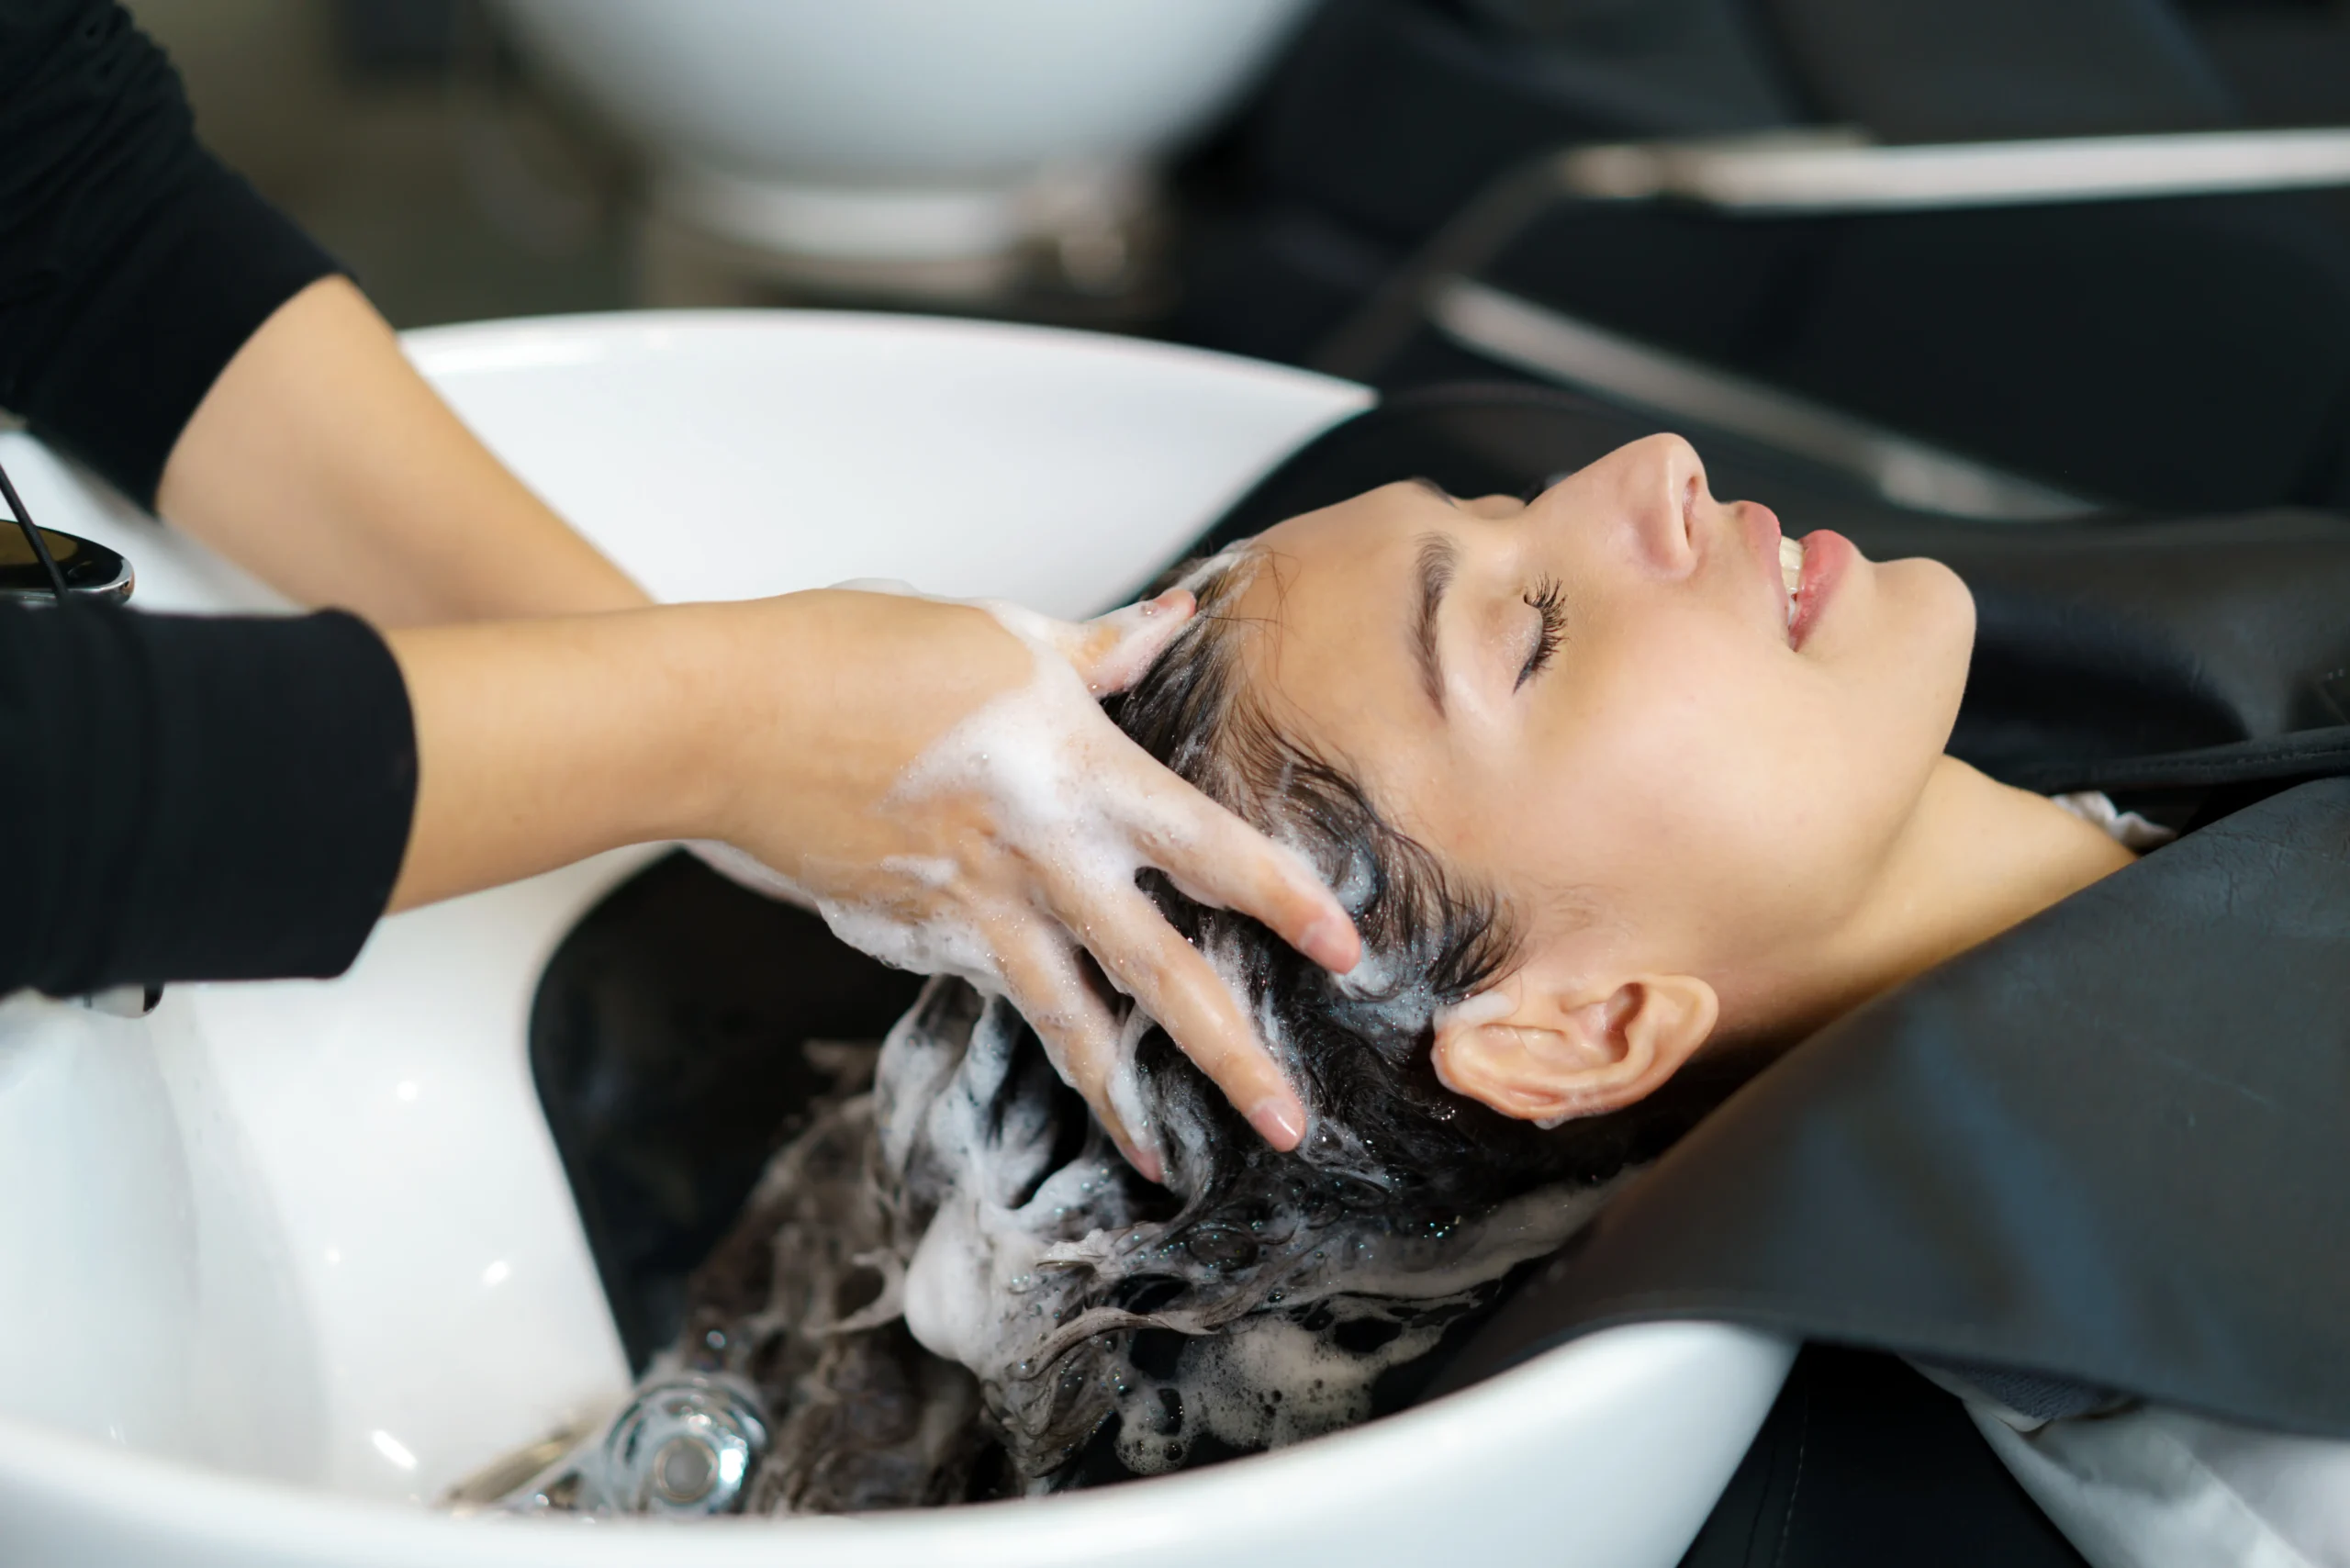 Chelatowanie włosów - poznaj metodę na lśniące i miękkie włosy